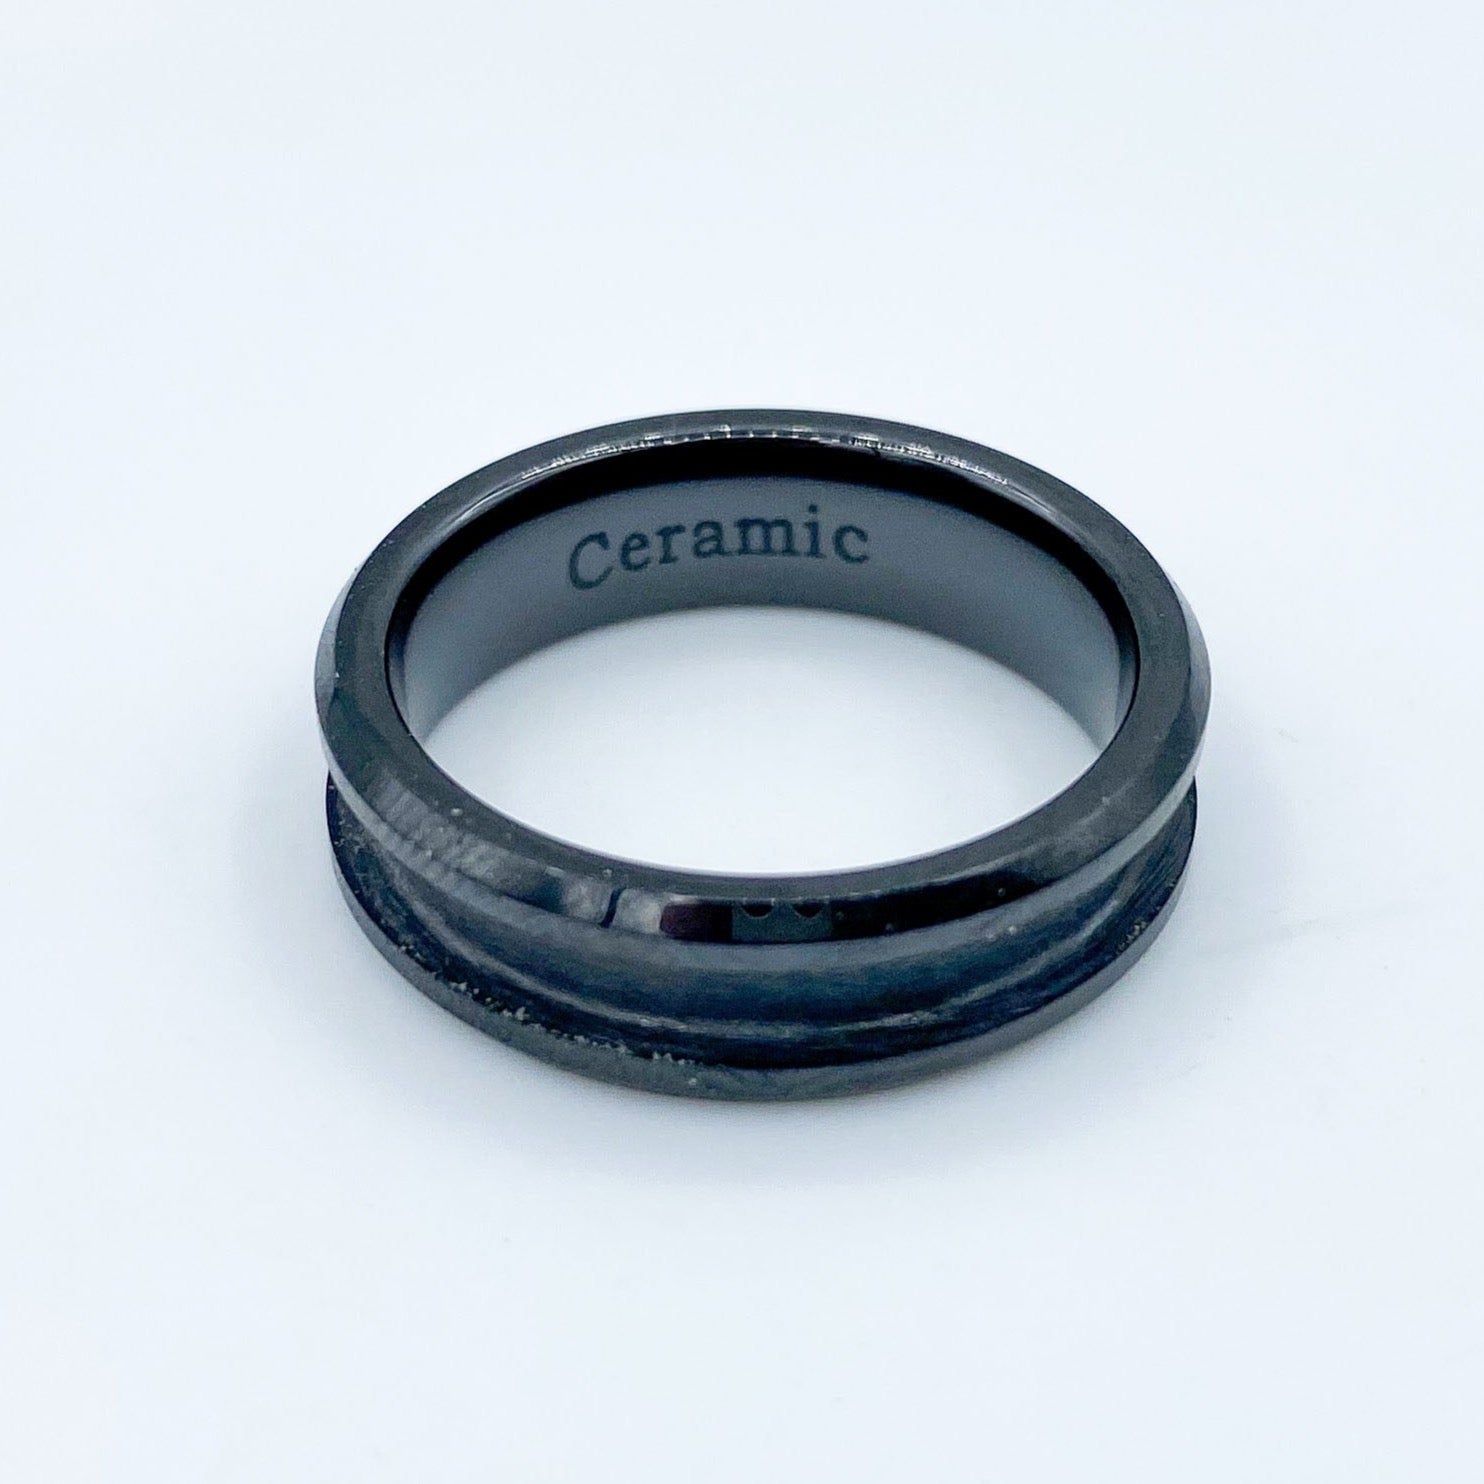 Men's Black Ceramic Wedding or Promise Ring - 8mm Width